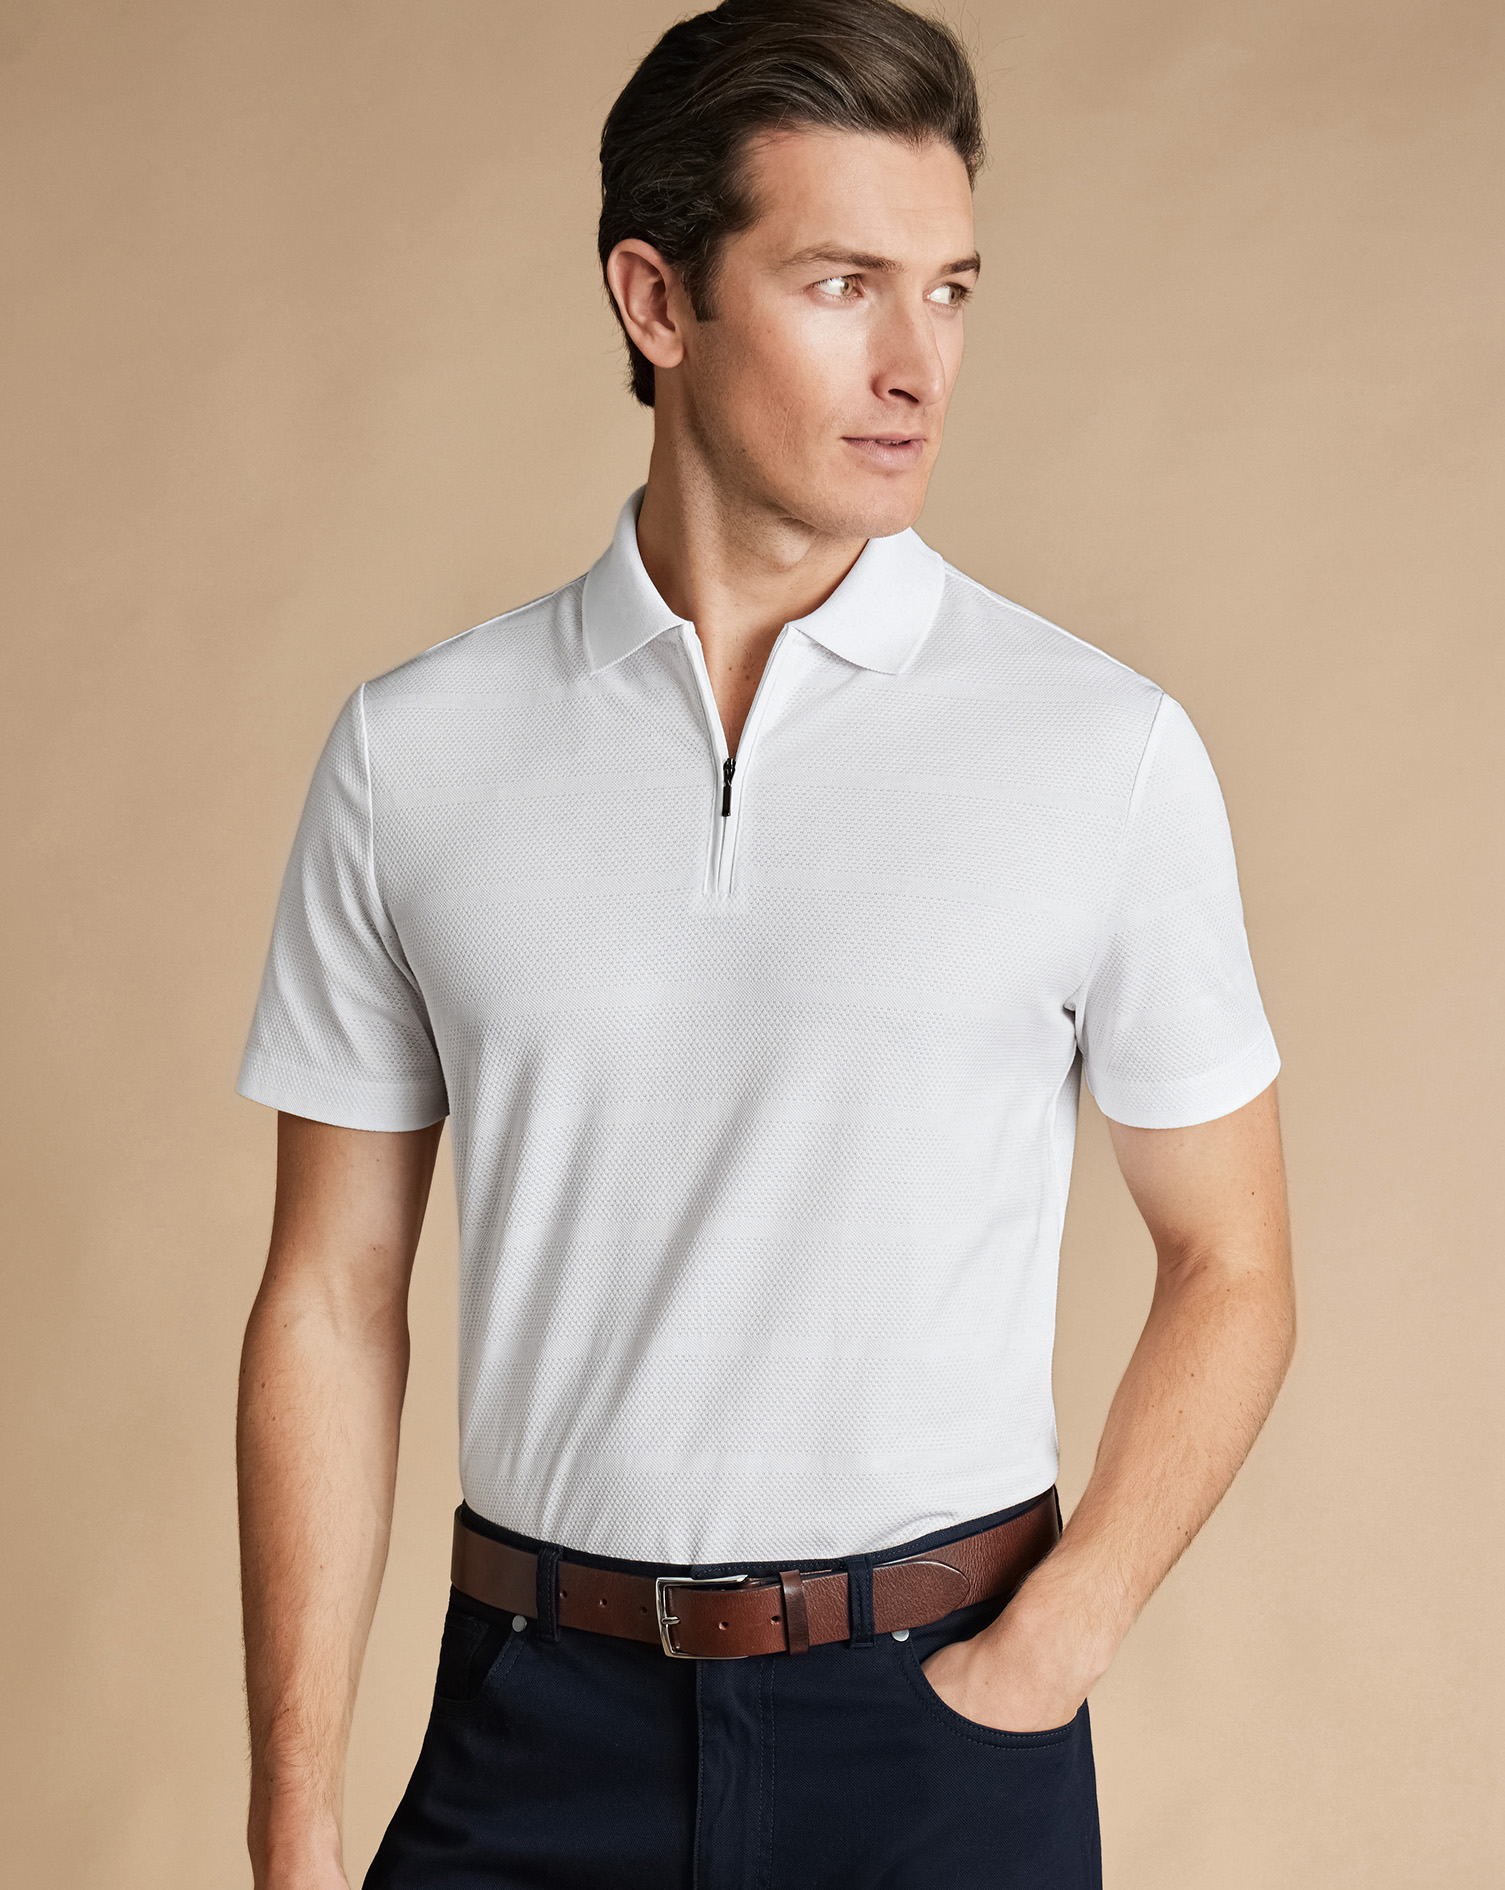 Men's Charles Tyrwhitt Popcorn Textured Tyrwhitt Cool Zip-Neck Stripe Polo Shirt - White Size XXL Co